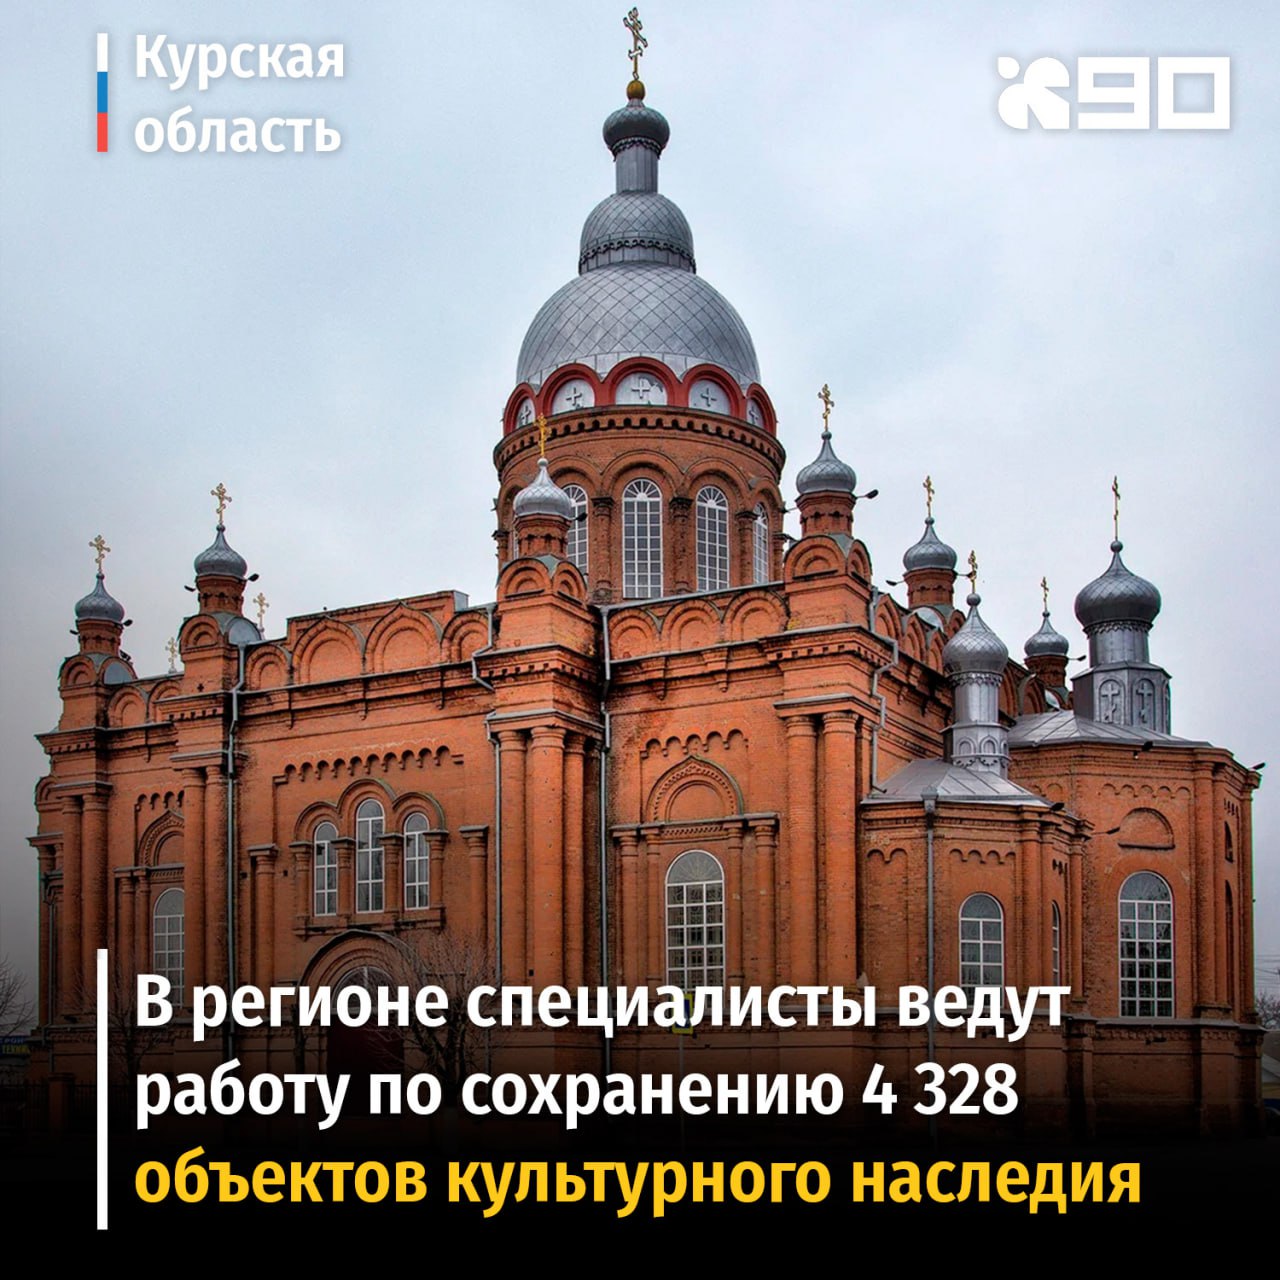 В Курске ведутся работы по сохранению более 4 тысяч объектов культурного наследия